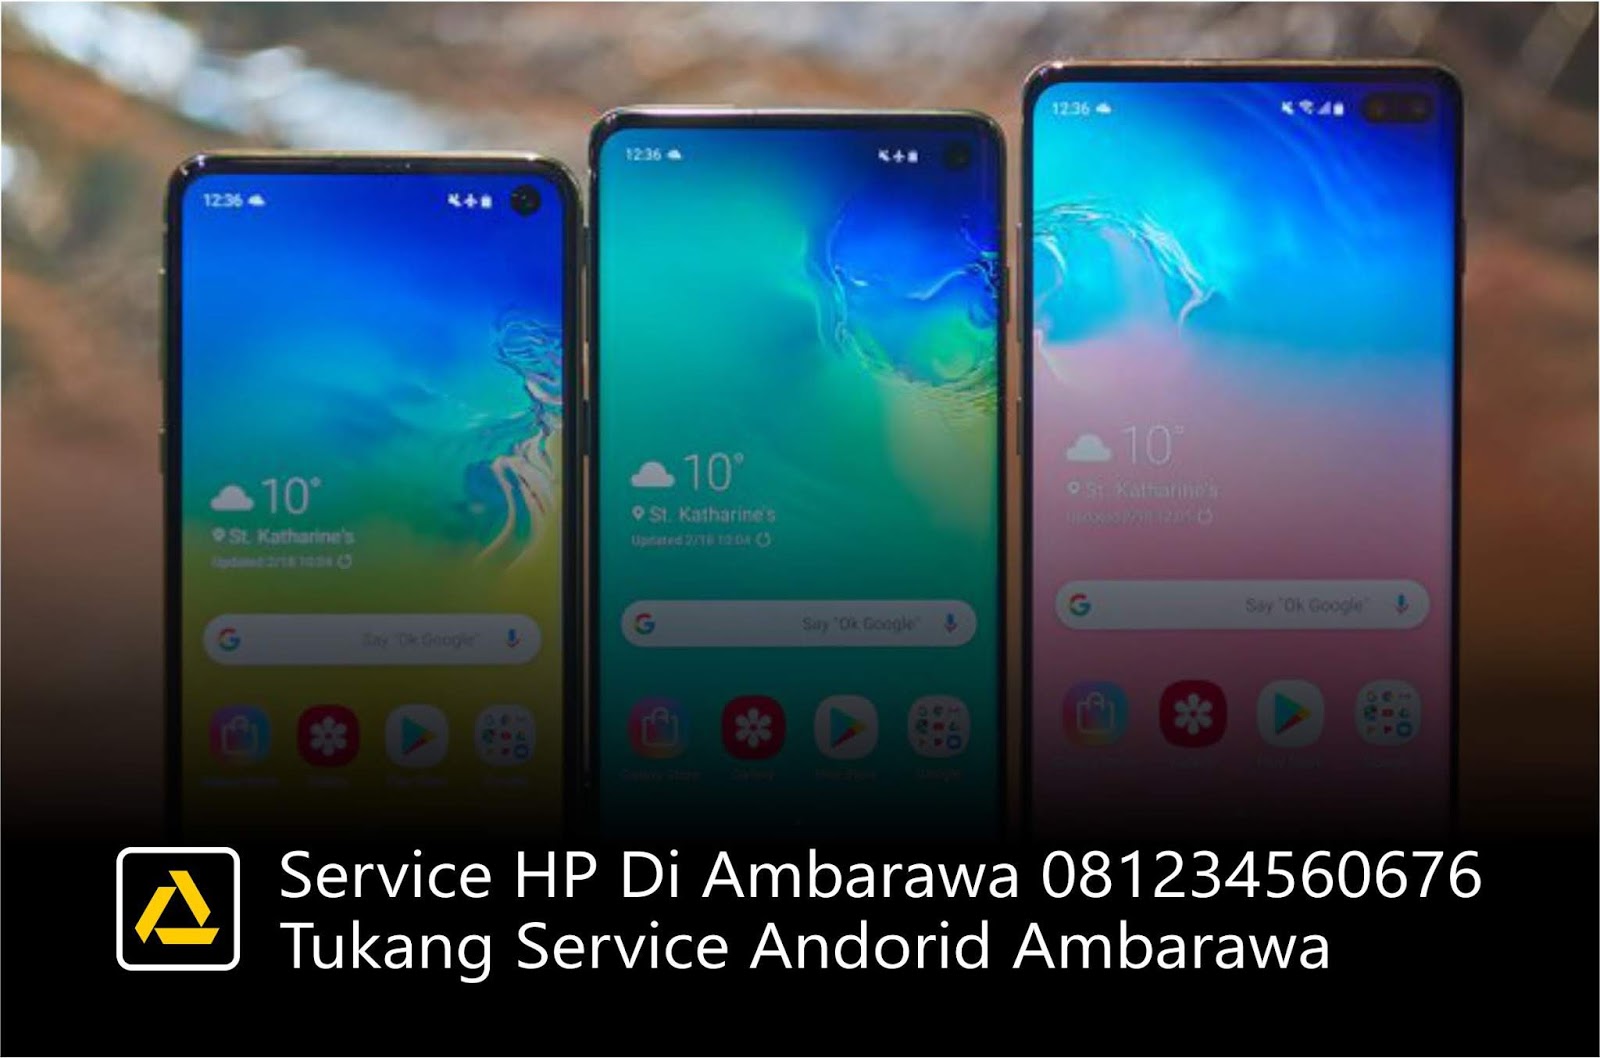 Service HP Di Ambarawa 081234560676, Tukang Service